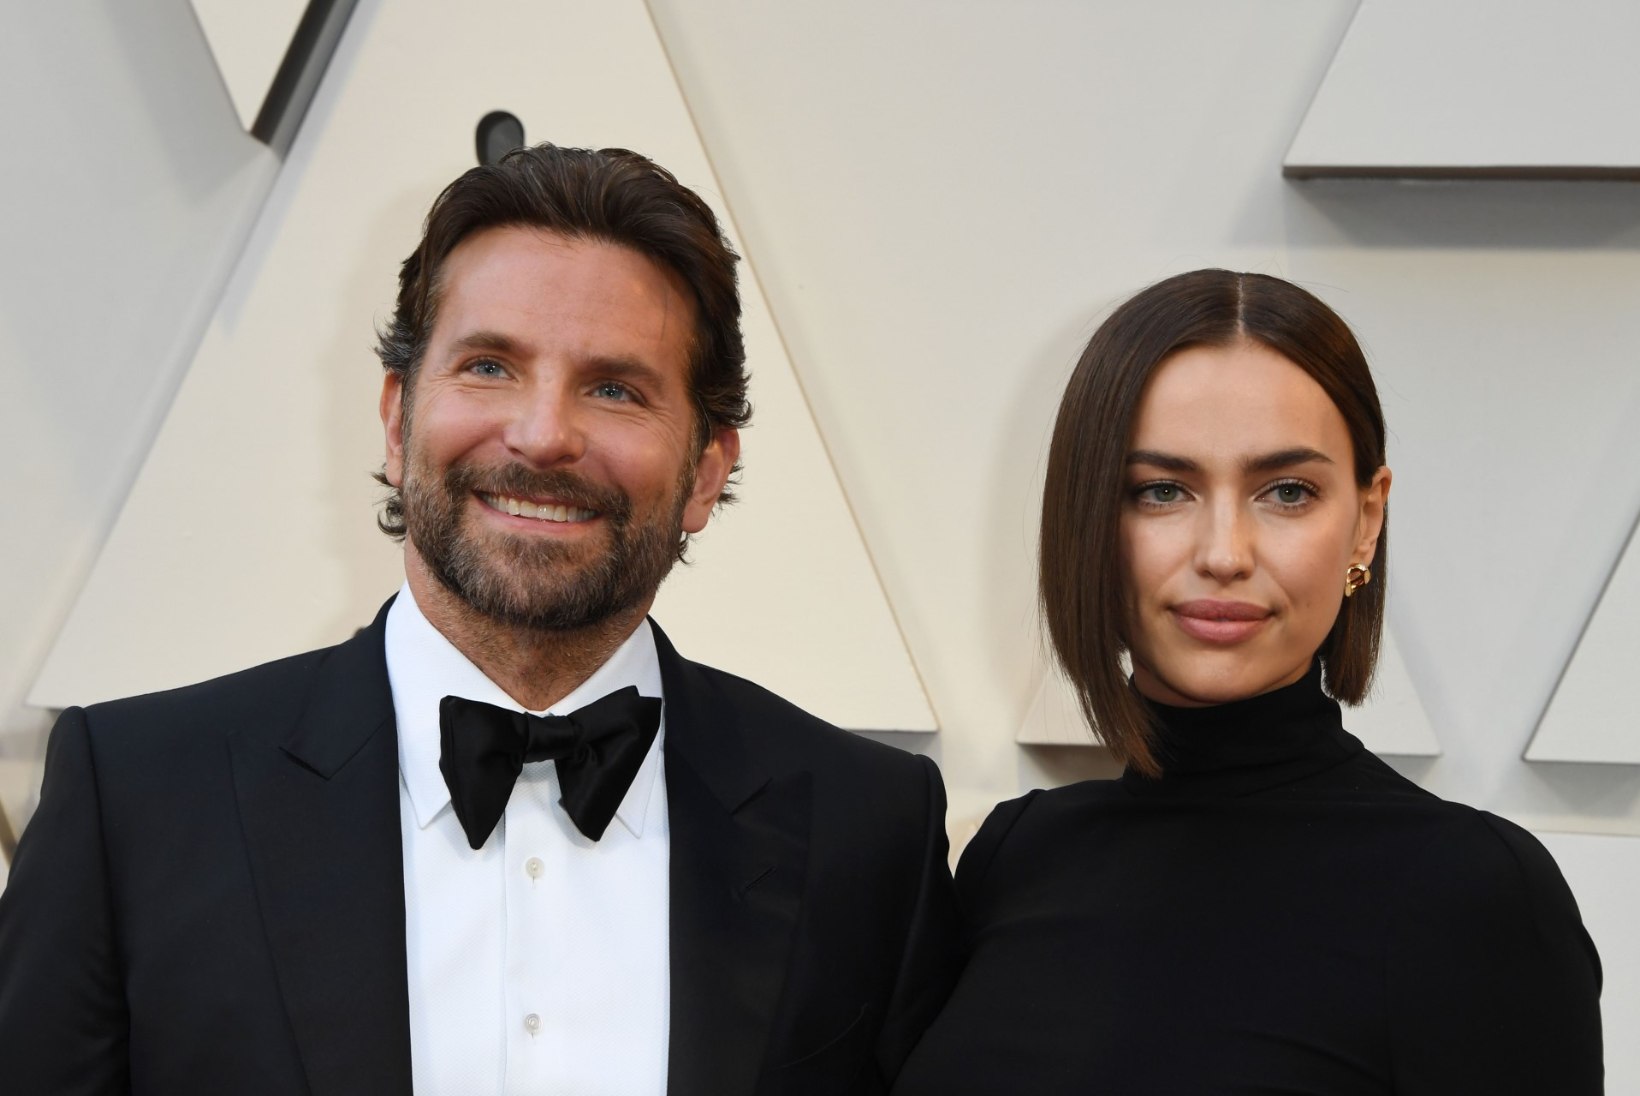 KUS SUITSU, SEAL TULD: Bradley Cooper läkski naisest lahku